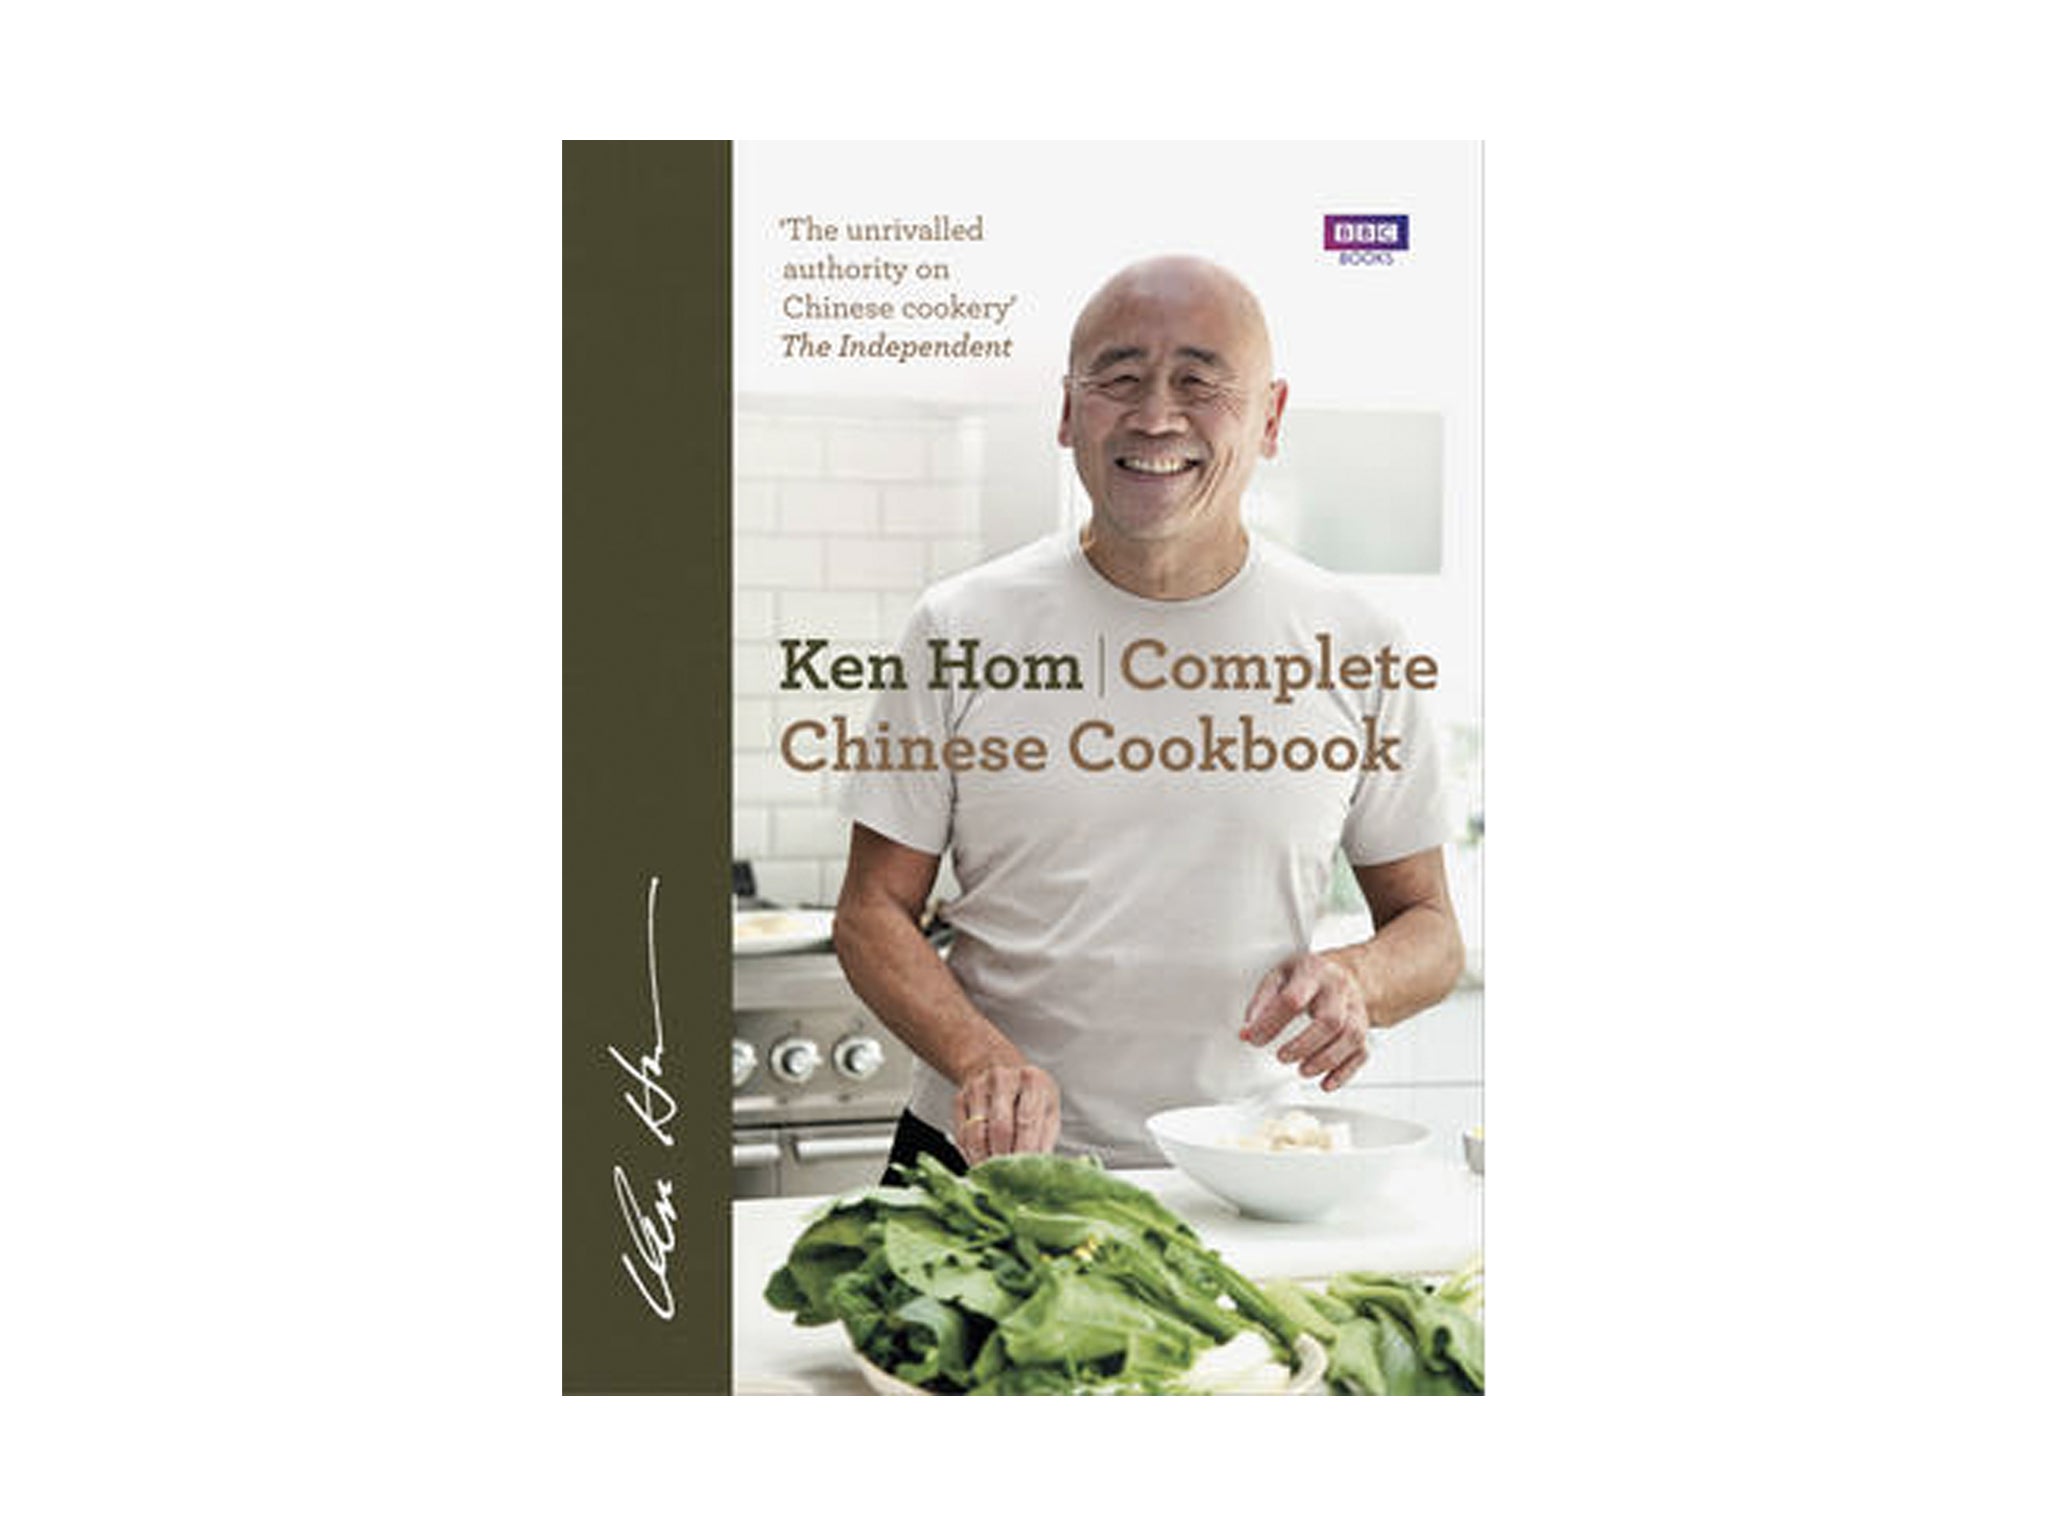 Ken Hom cookbook.jpg